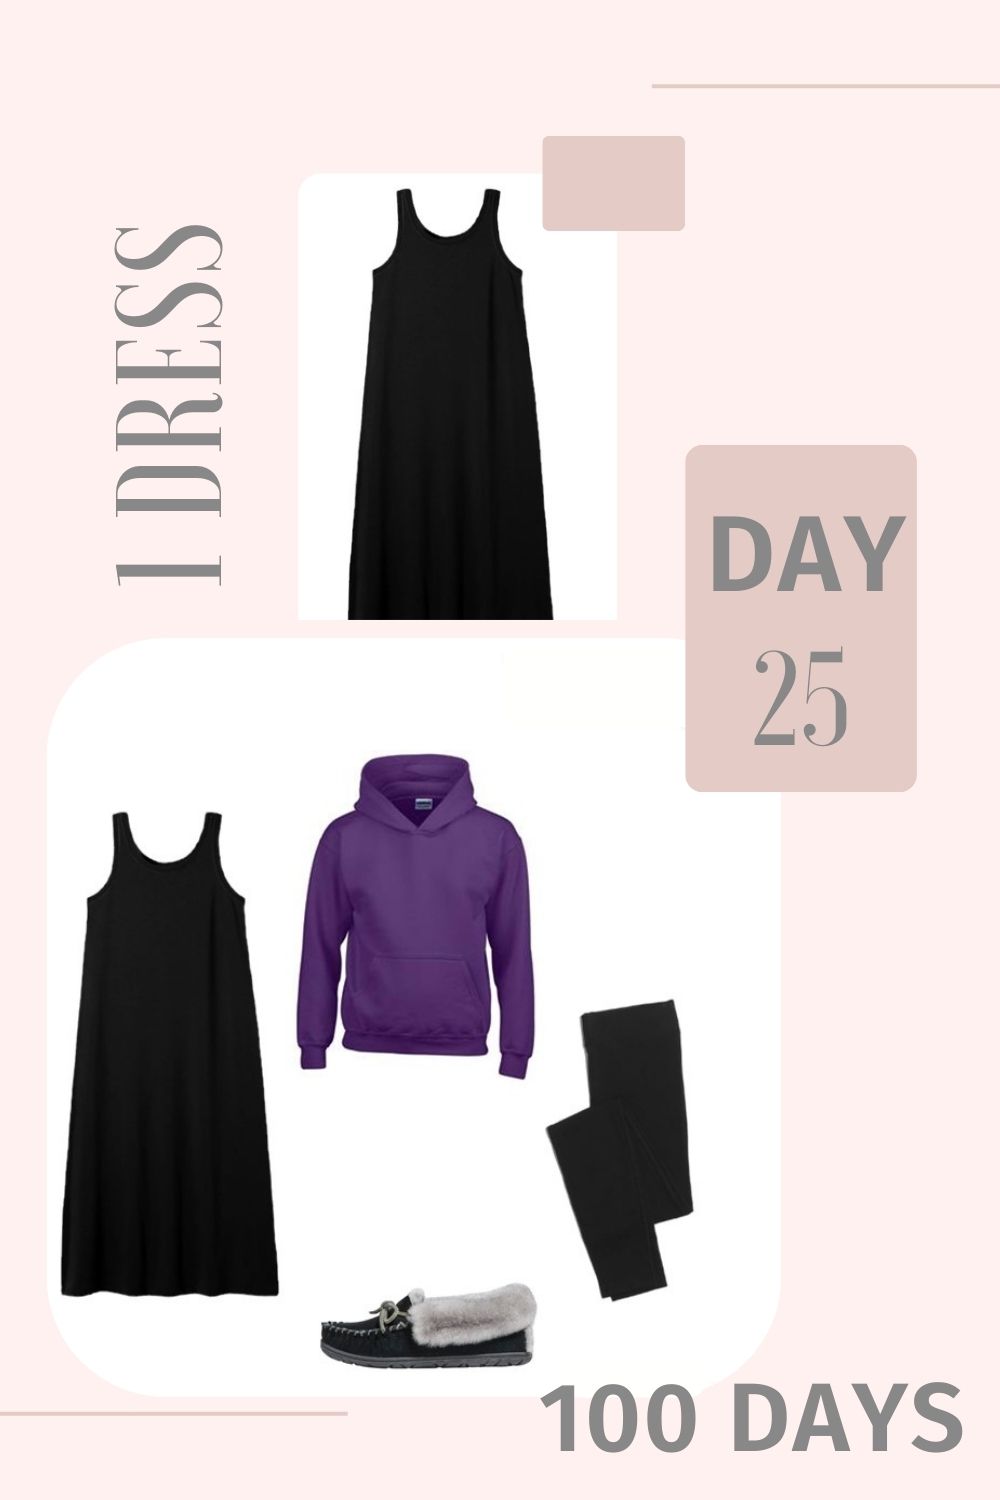 1 Dress 100 Days - Day 25